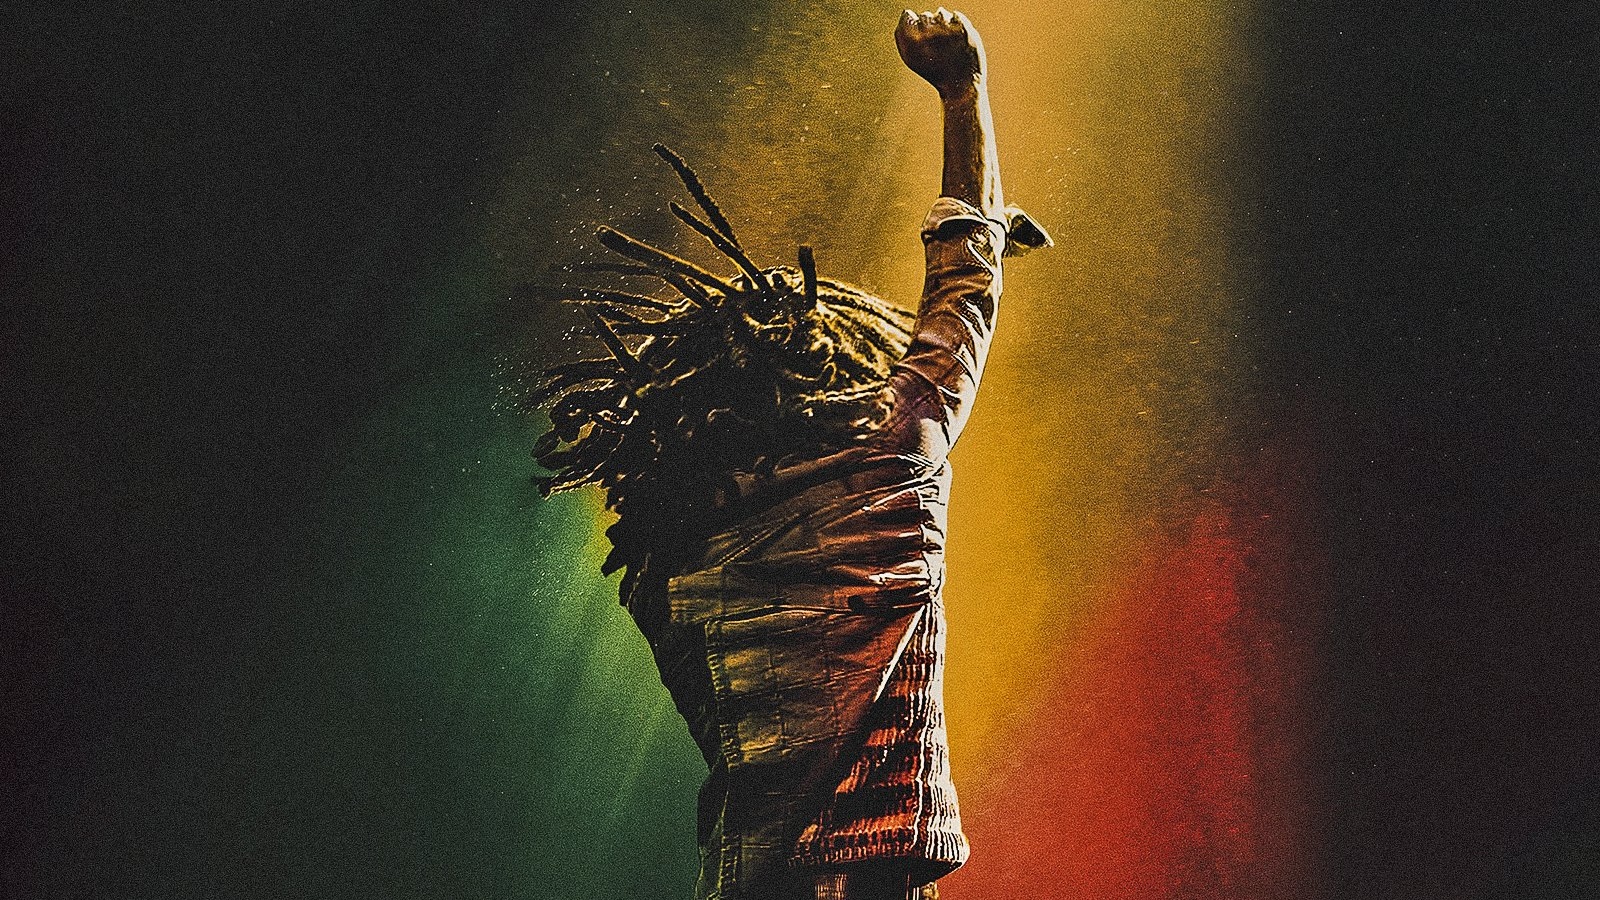 Bob Marley - One Love, la recensione: una leggenda della musica per un biopic attuale